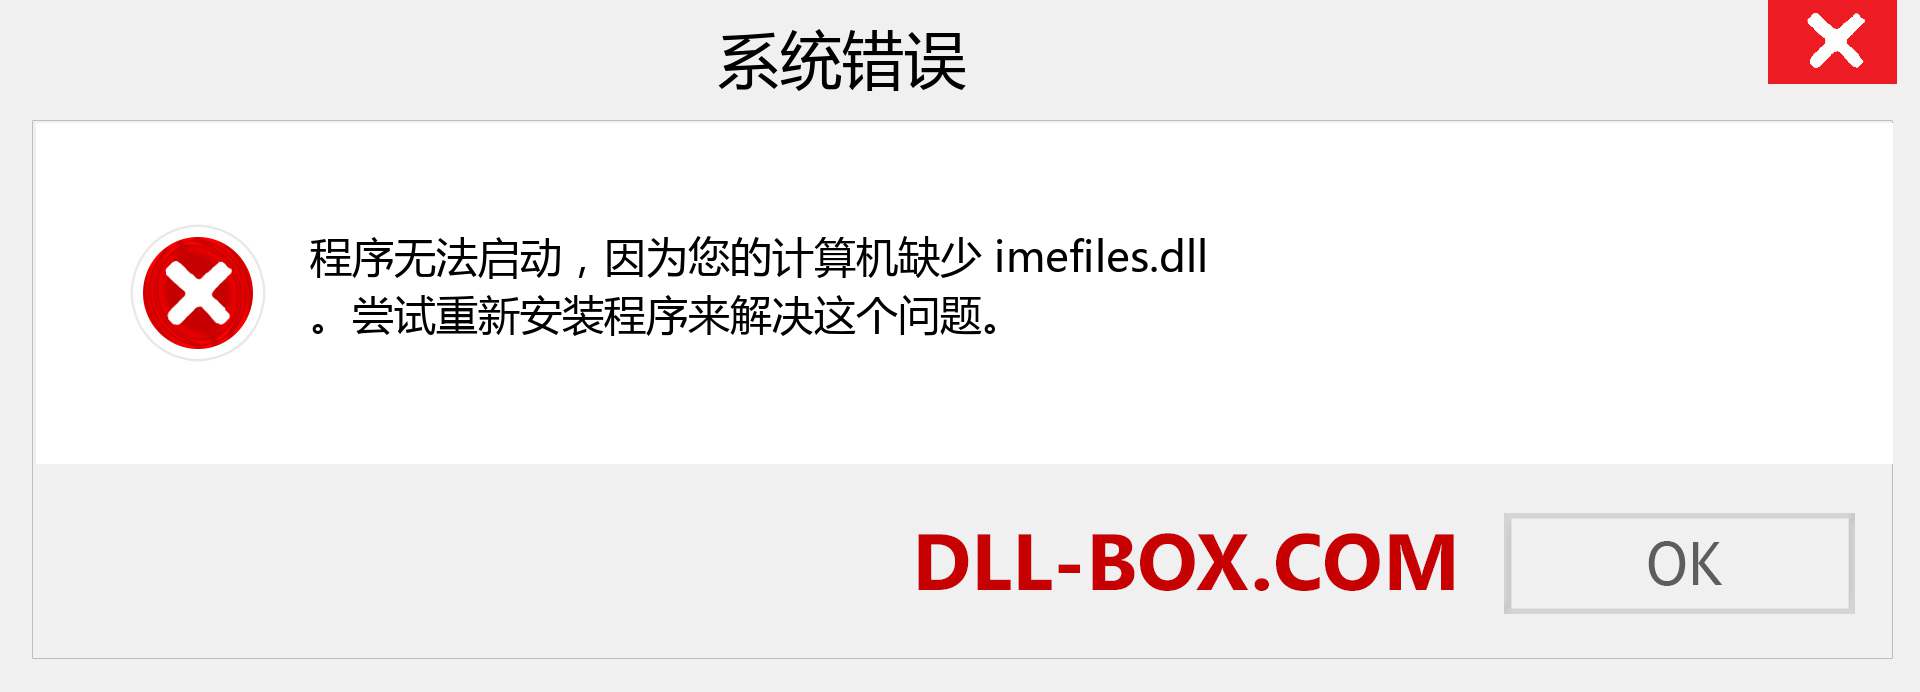 imefiles.dll 文件丢失？。 适用于 Windows 7、8、10 的下载 - 修复 Windows、照片、图像上的 imefiles dll 丢失错误